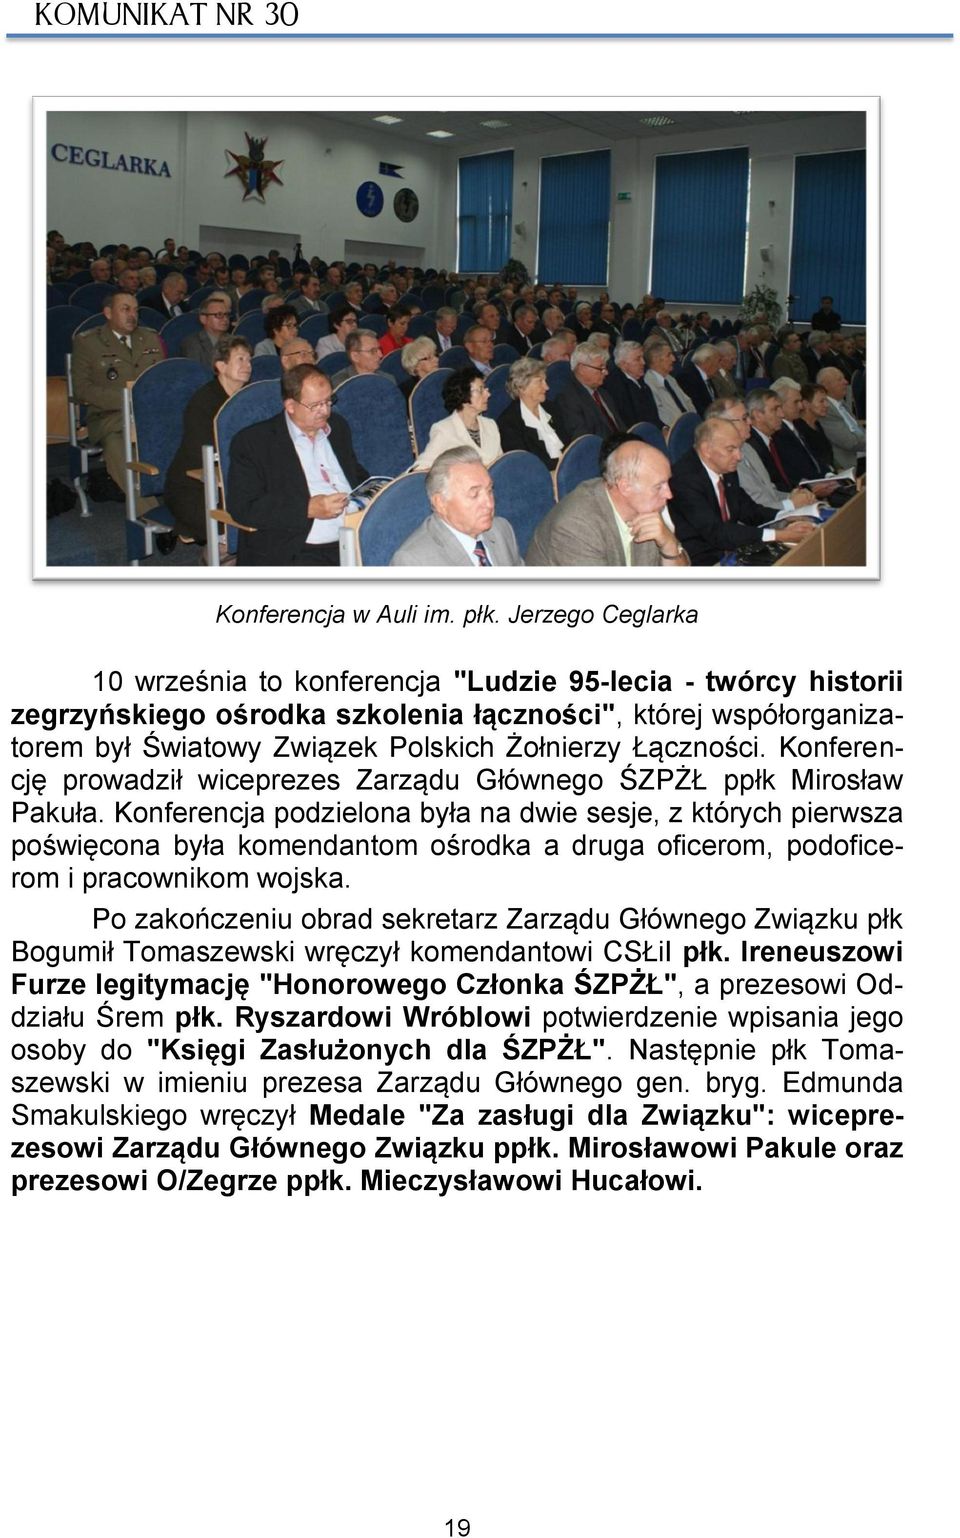 Konferencję prowadził wiceprezes Zarządu Głównego ŚZPŻŁ ppłk Mirosław Pakuła.